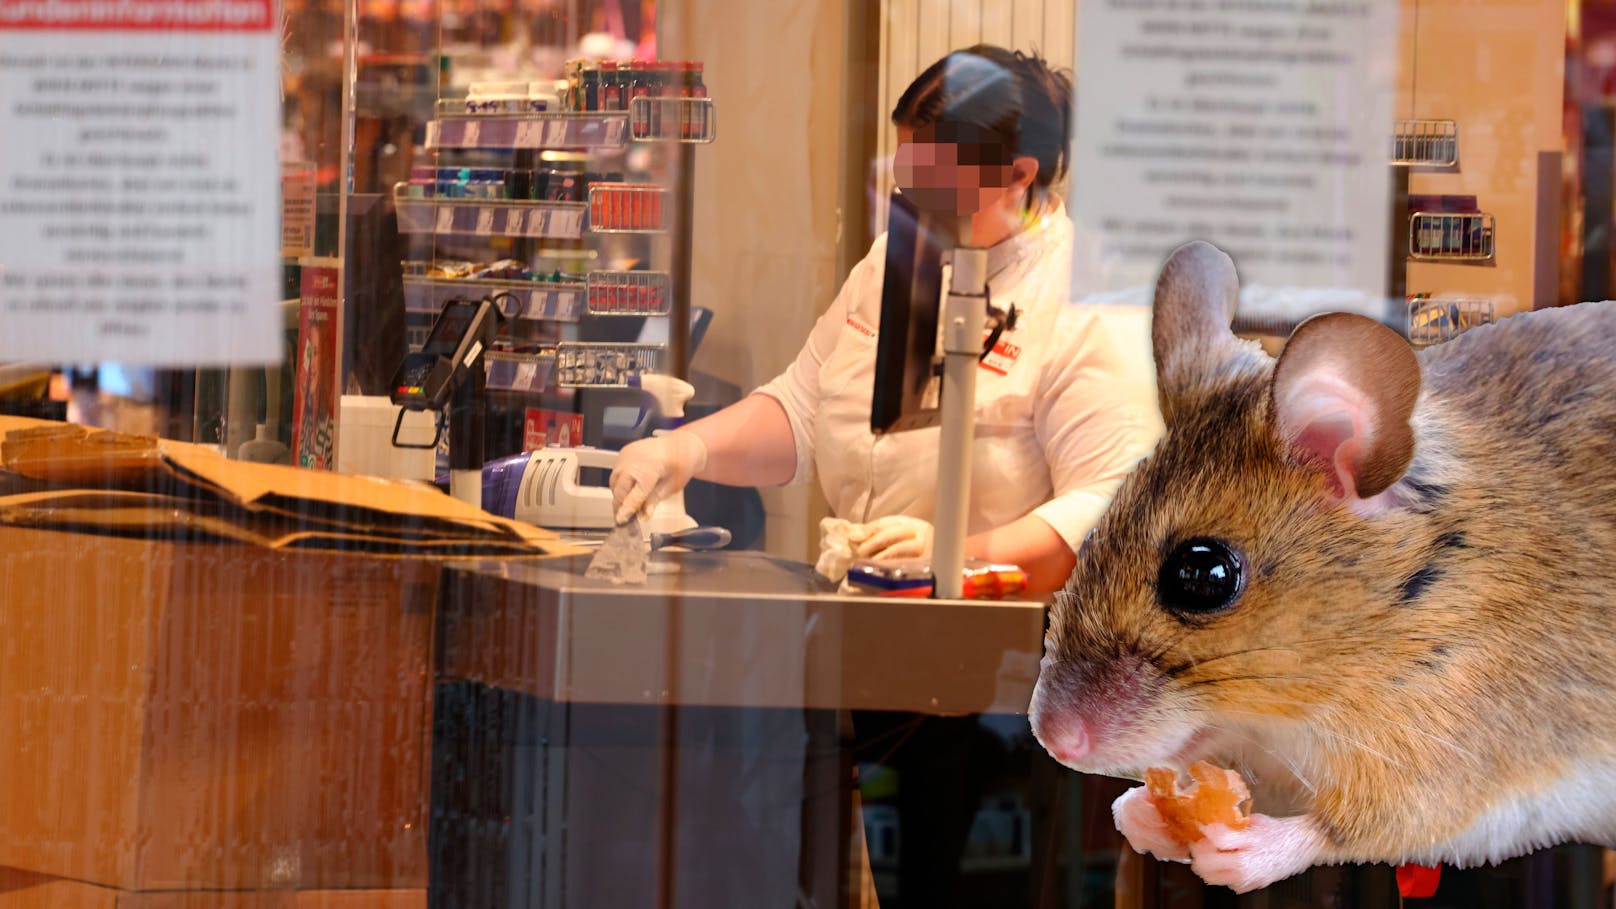 Mäuse-Invasion – bekannter Supermarkt muss zusperren